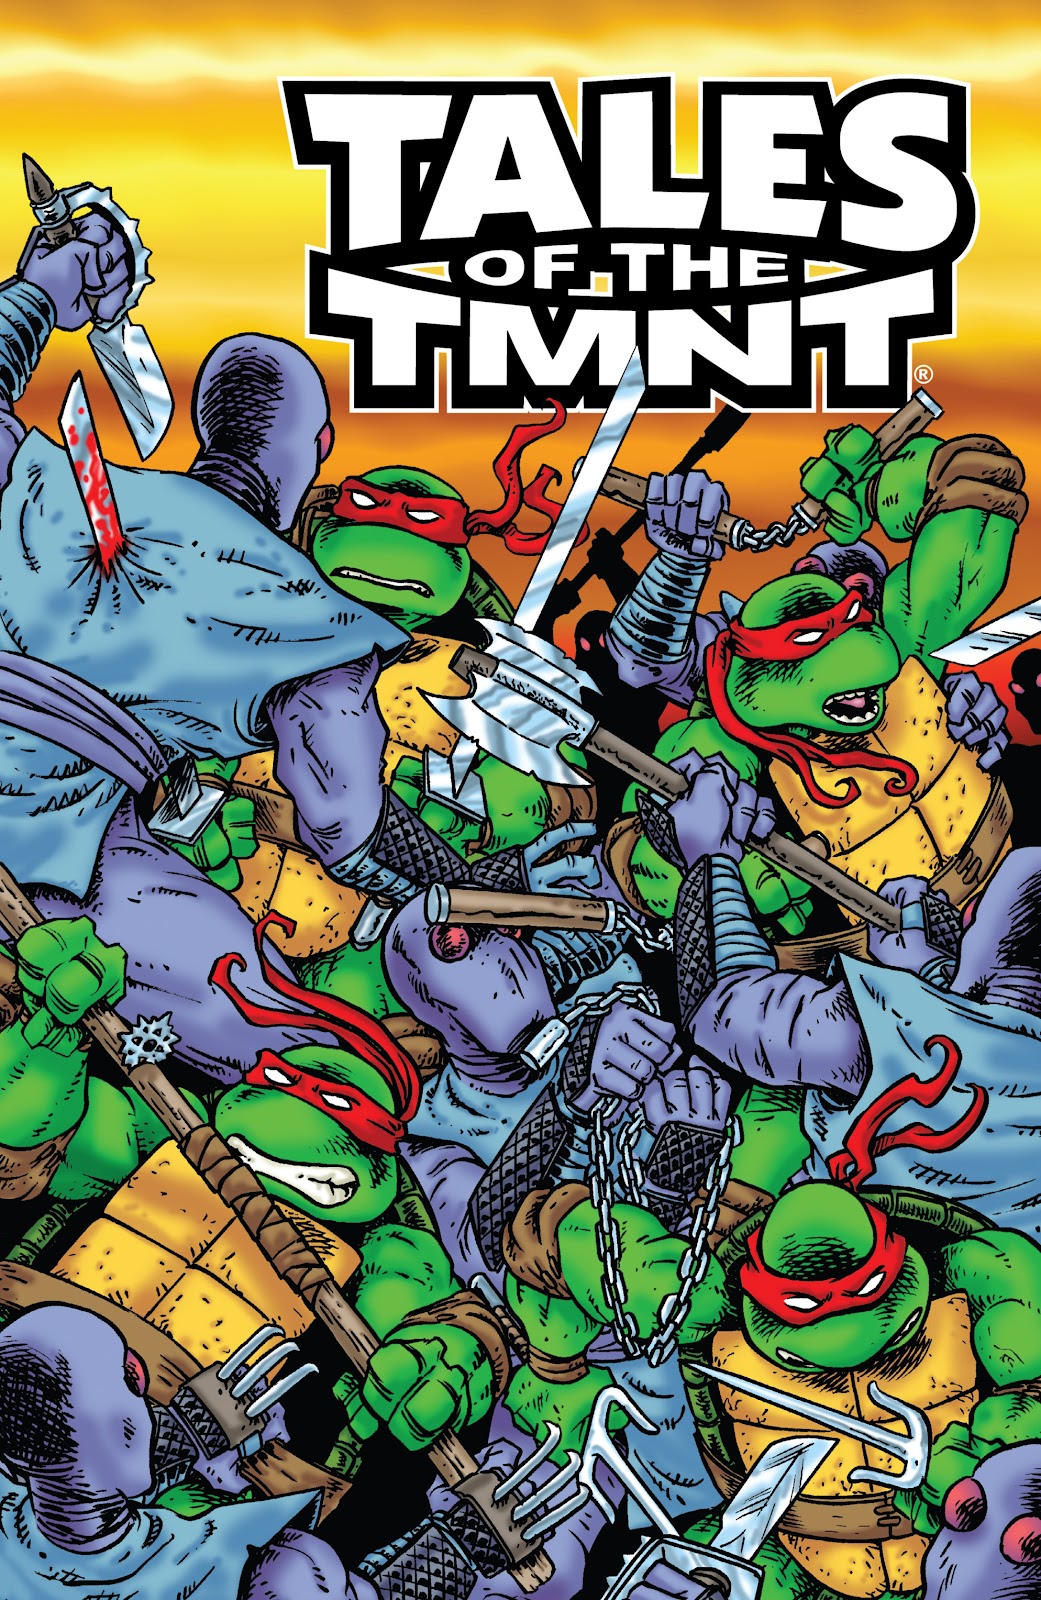 Tales of the Teenage Mutant Ninja Turtles issue TPB 8 - Page 91